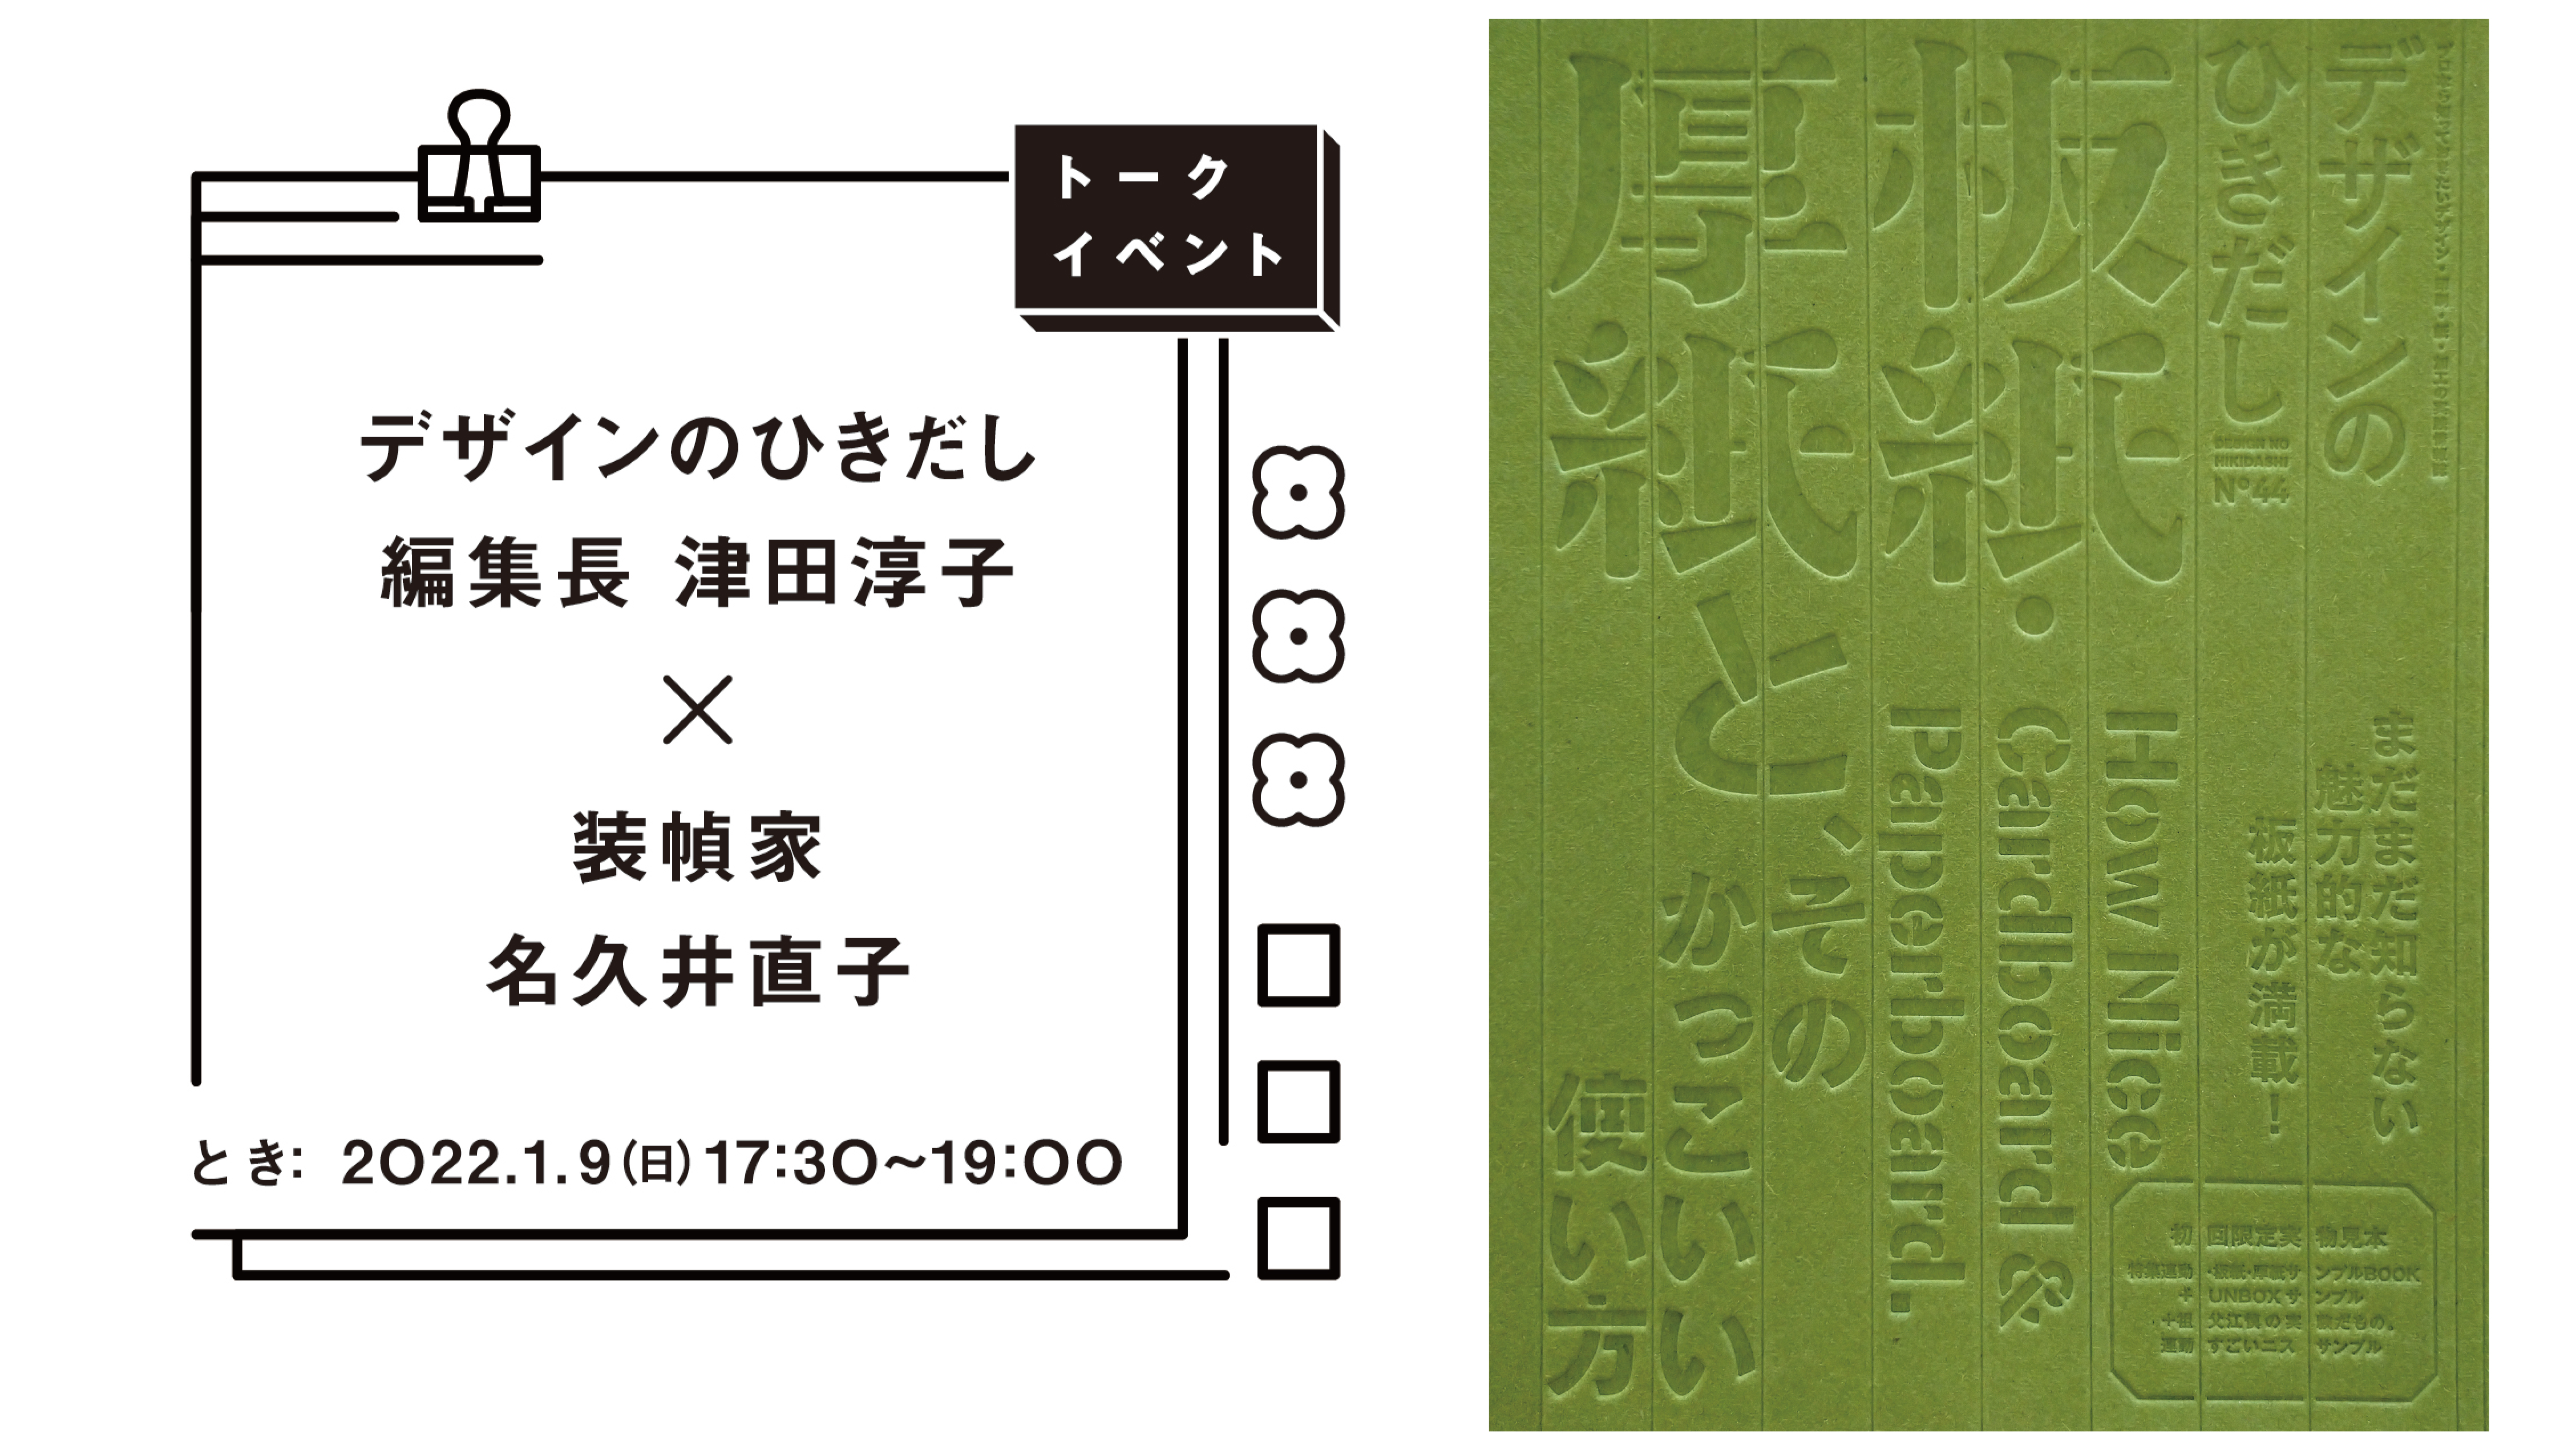 22年1月9日 日 京都 大垣書店で好評開催中の デザインのひきだし のひきだし展 で スペシャルトークイベント開催 株式会社グラフィック社のプレスリリース